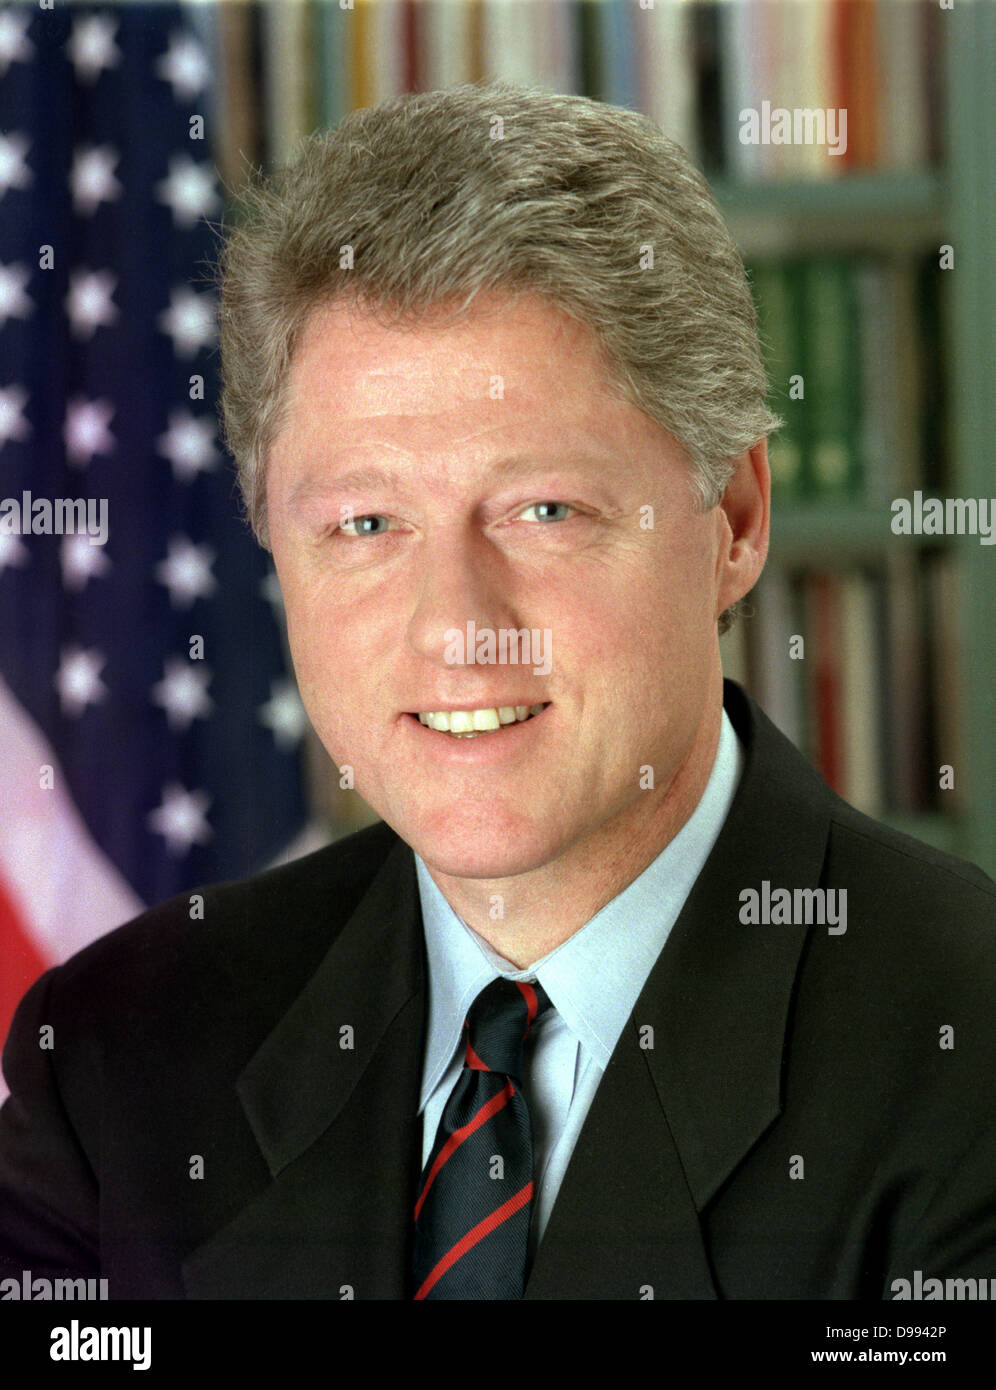 William Jefferson Clinton (nato nel 1946) 42° Presidente degli Stati Uniti dal 1993-2001. Testa e spalle verticale con stelle e strisce in background. Uomo politico americano democratici Foto Stock